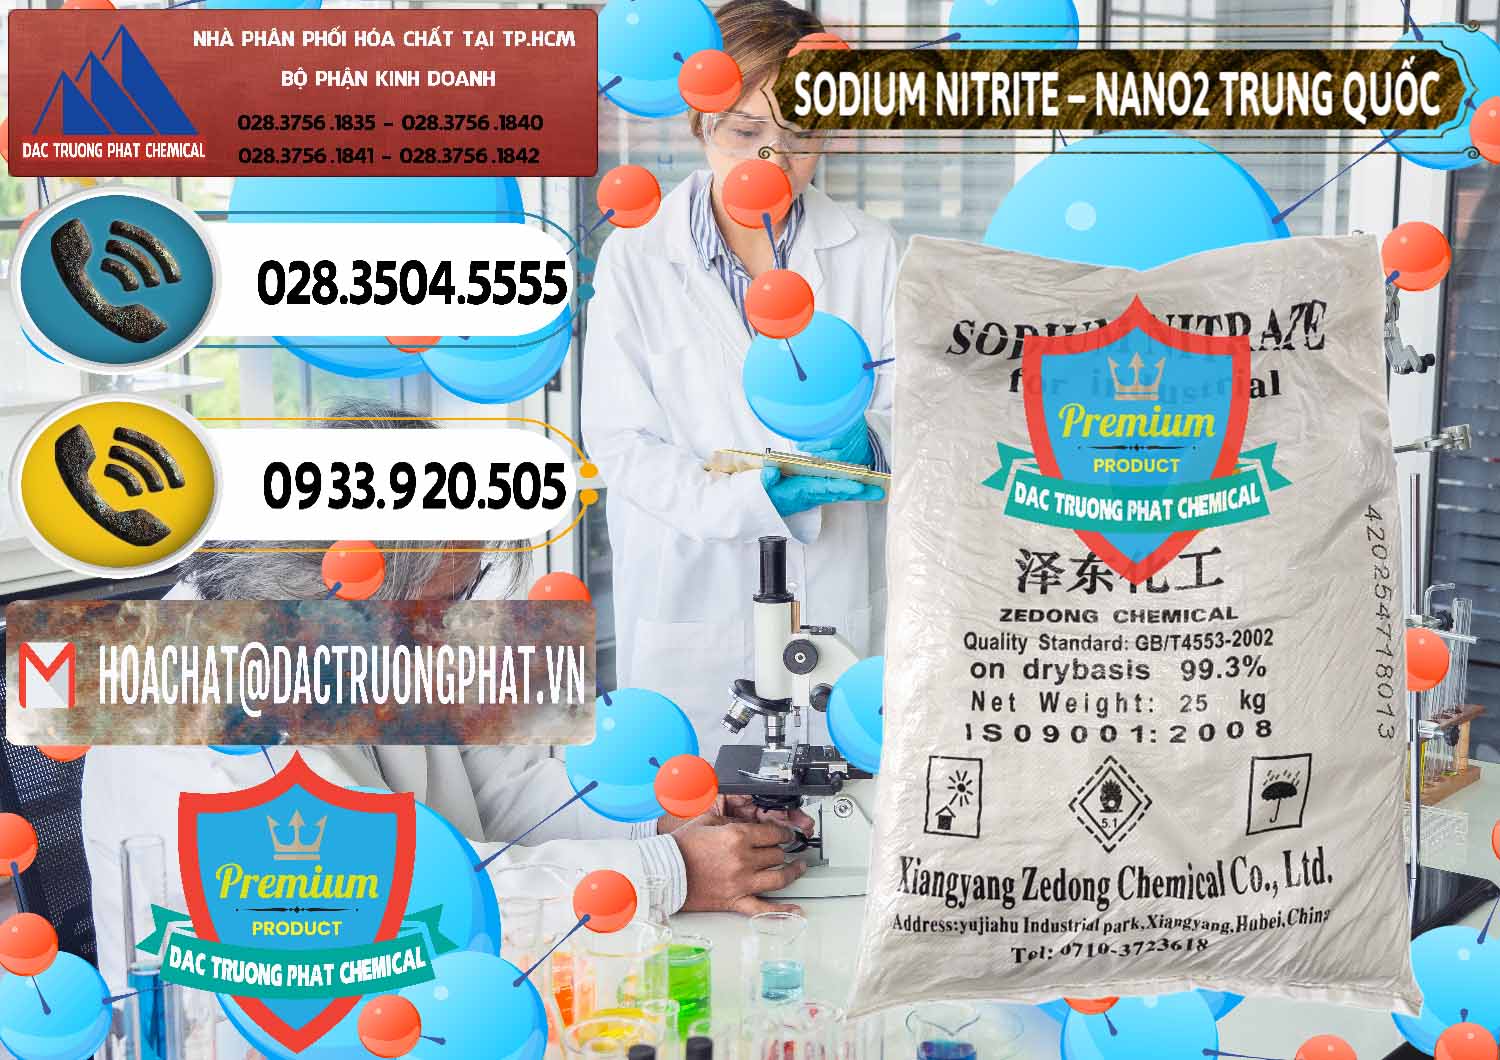 Nhập khẩu & bán Sodium Nitrite - NANO2 Zedong Trung Quốc China - 0149 - Đơn vị cung cấp và nhập khẩu hóa chất tại TP.HCM - hoachatdetnhuom.vn